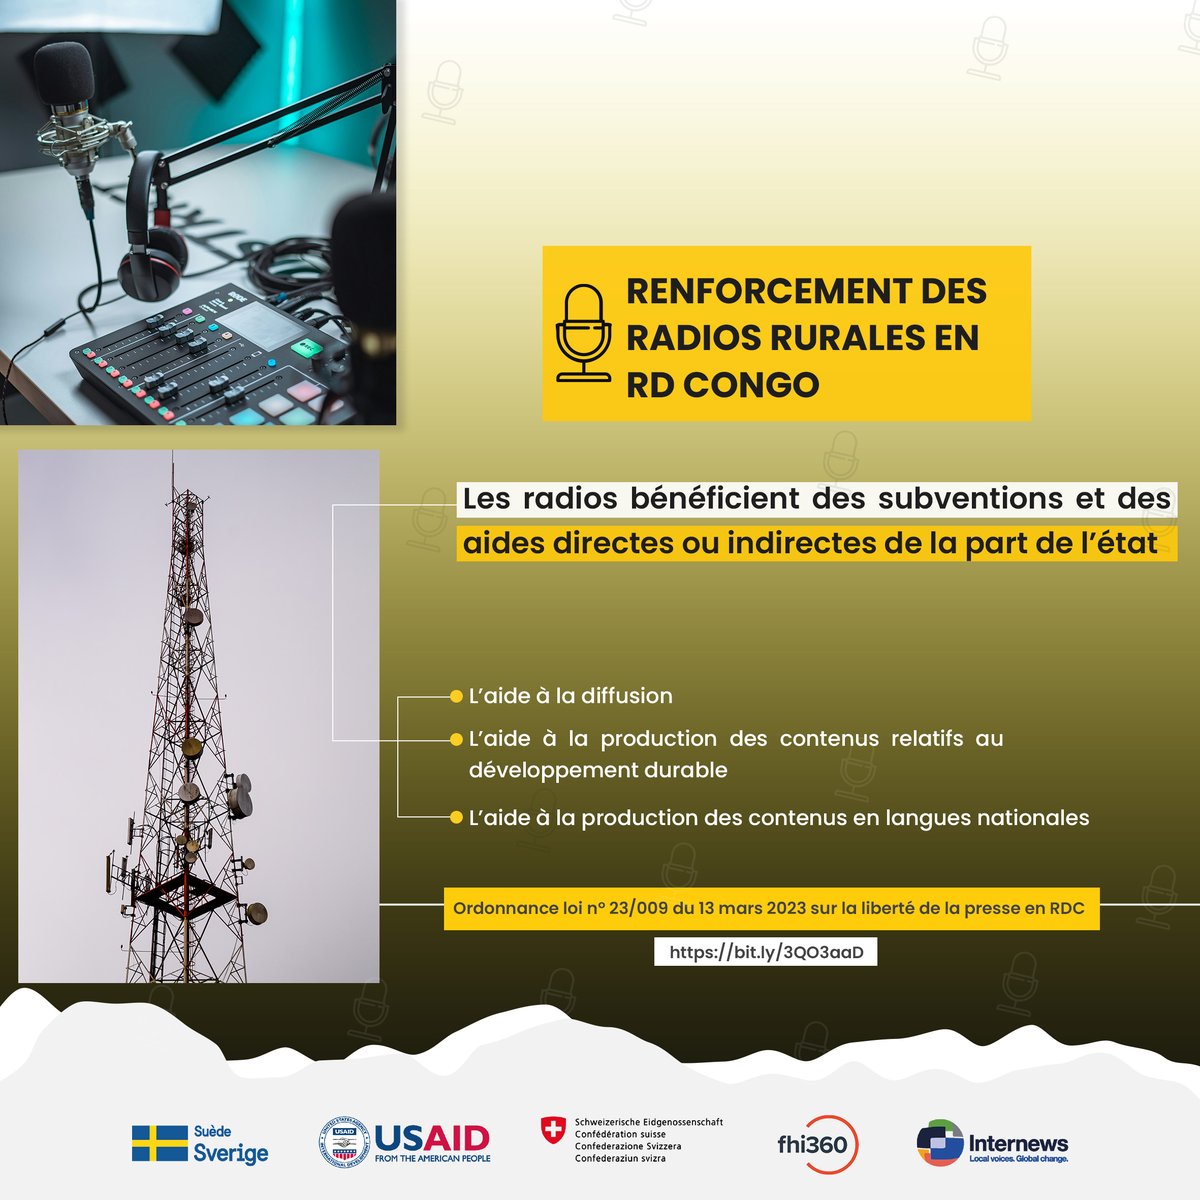 Renforcement des radios rurales en RD Congo, les radios bénéficient des subventions et des aides directes ou indirectes de la part de l'état dans la nouvelle loi.